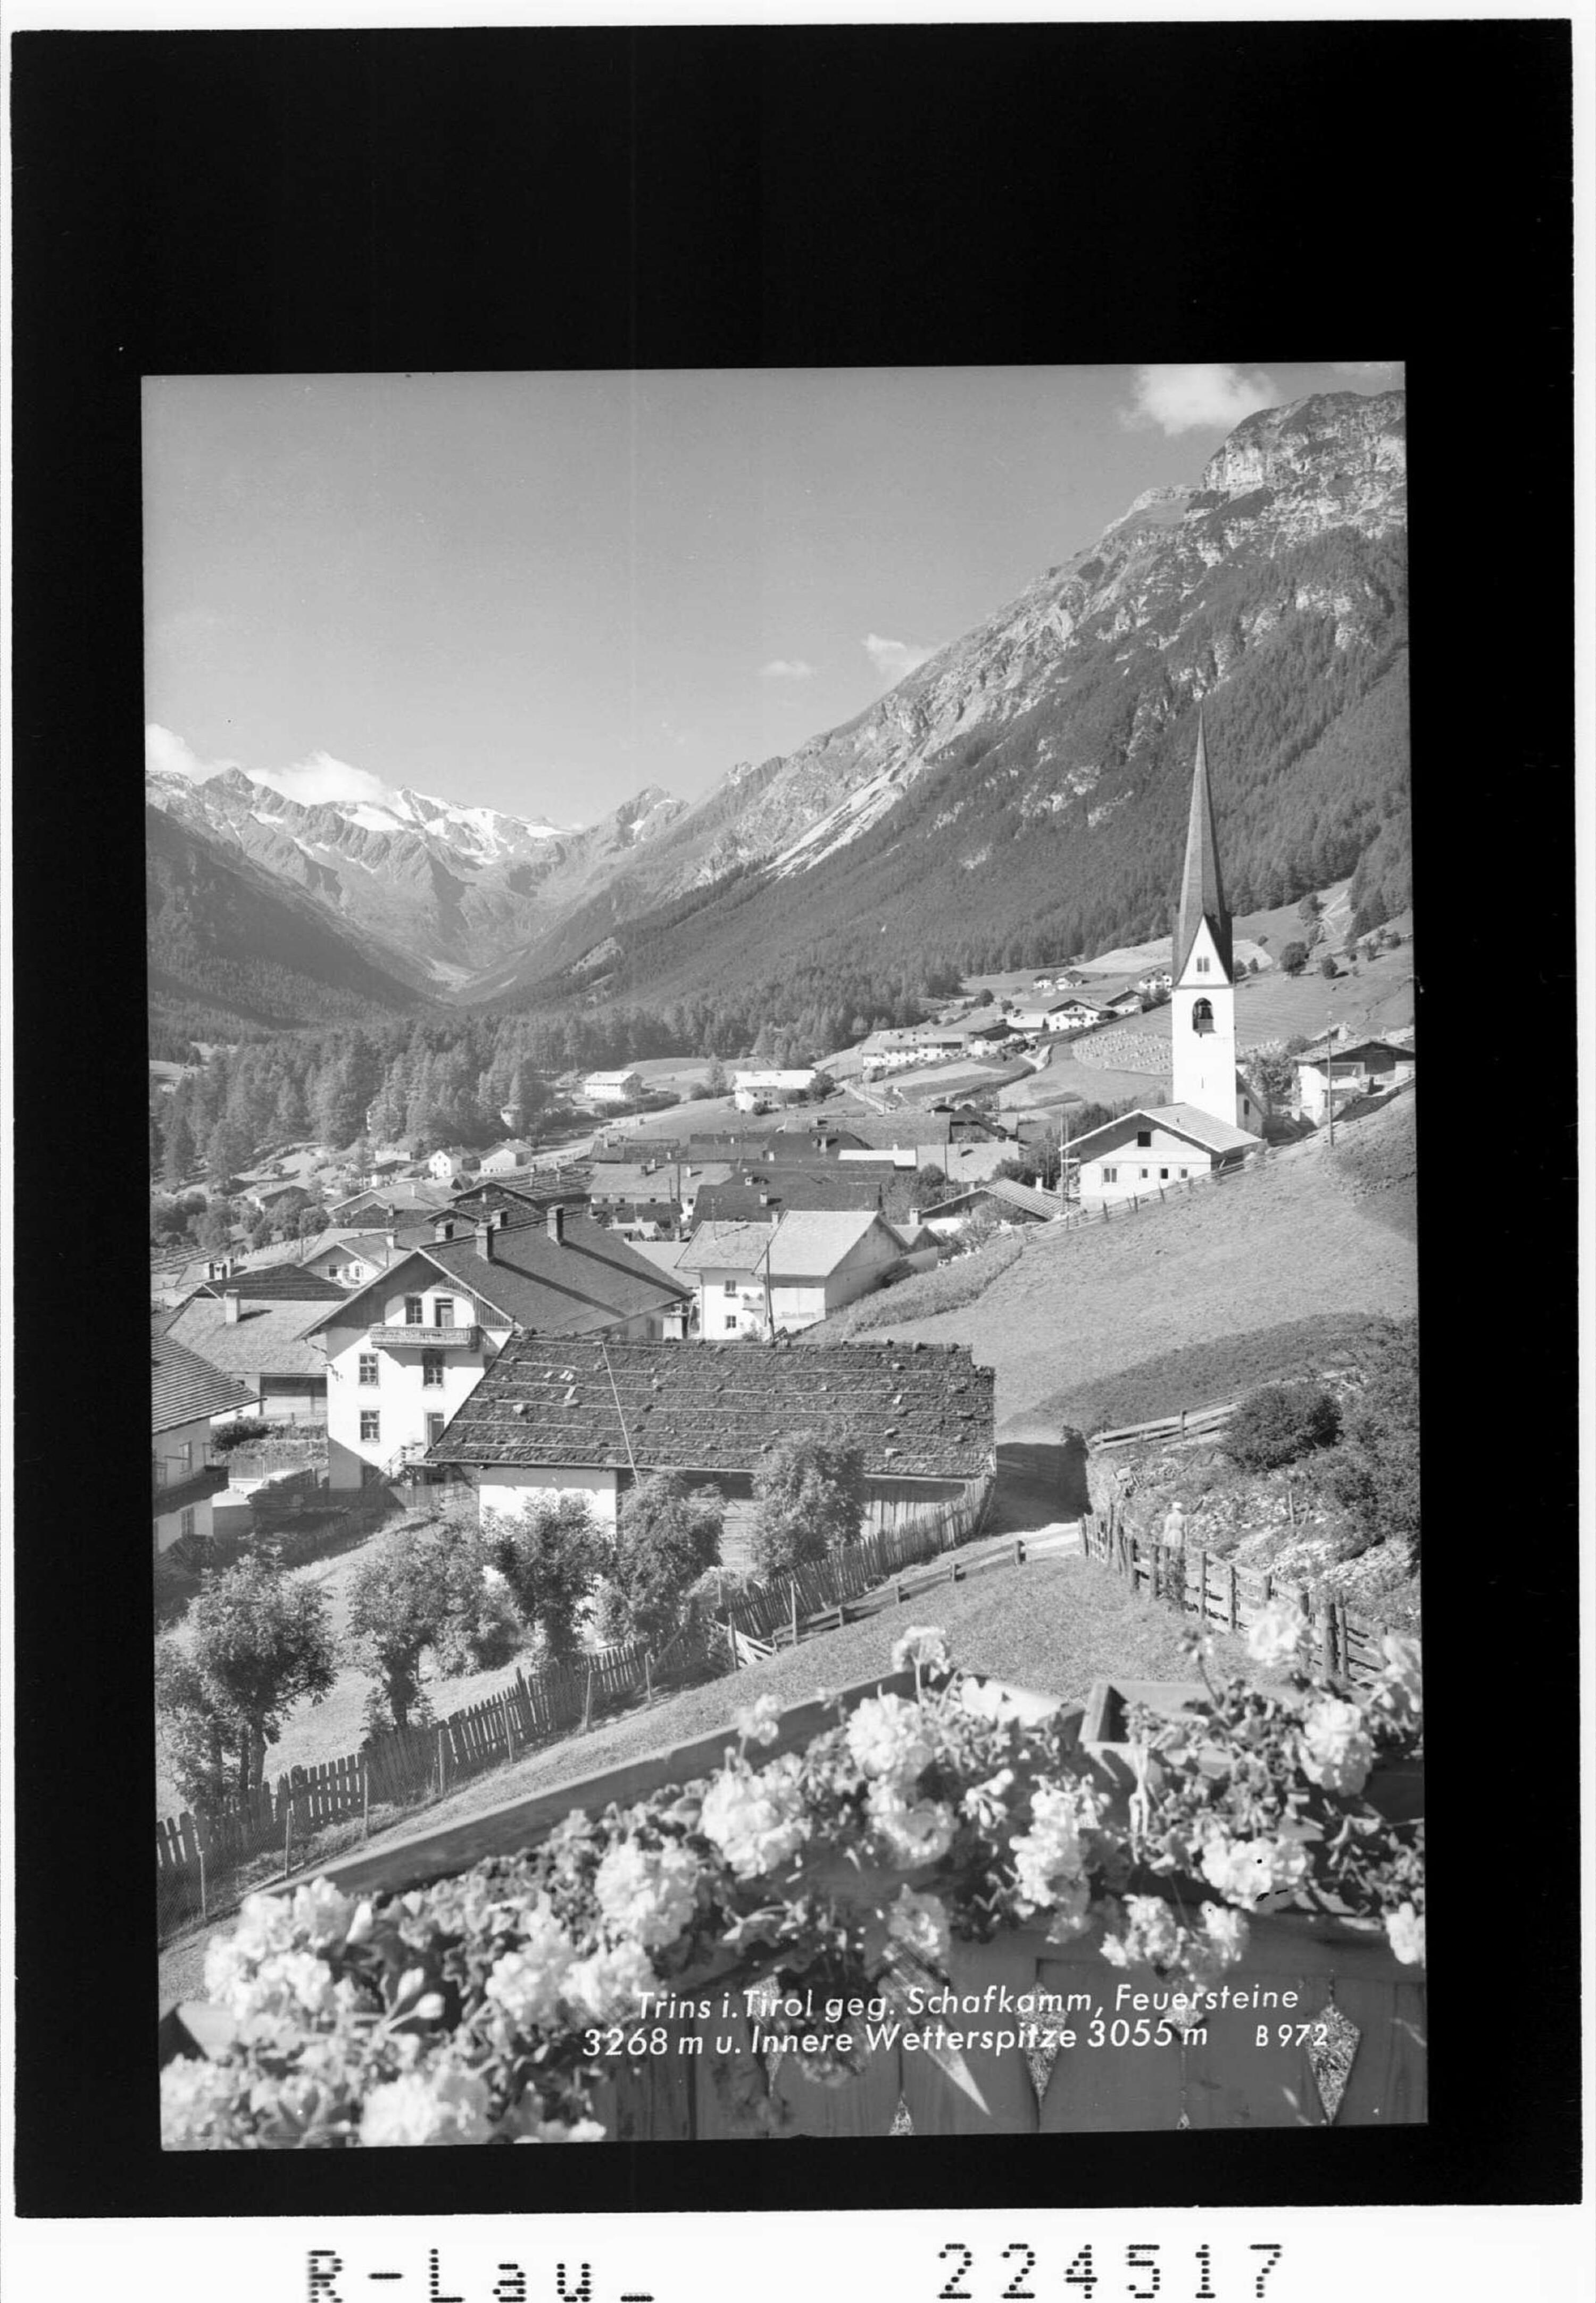 Trins in Tirol gegen Schafkamm - Feuersteine 3268 m und Innere Wetterspitze 3055></div>


    <hr>
    <div class=